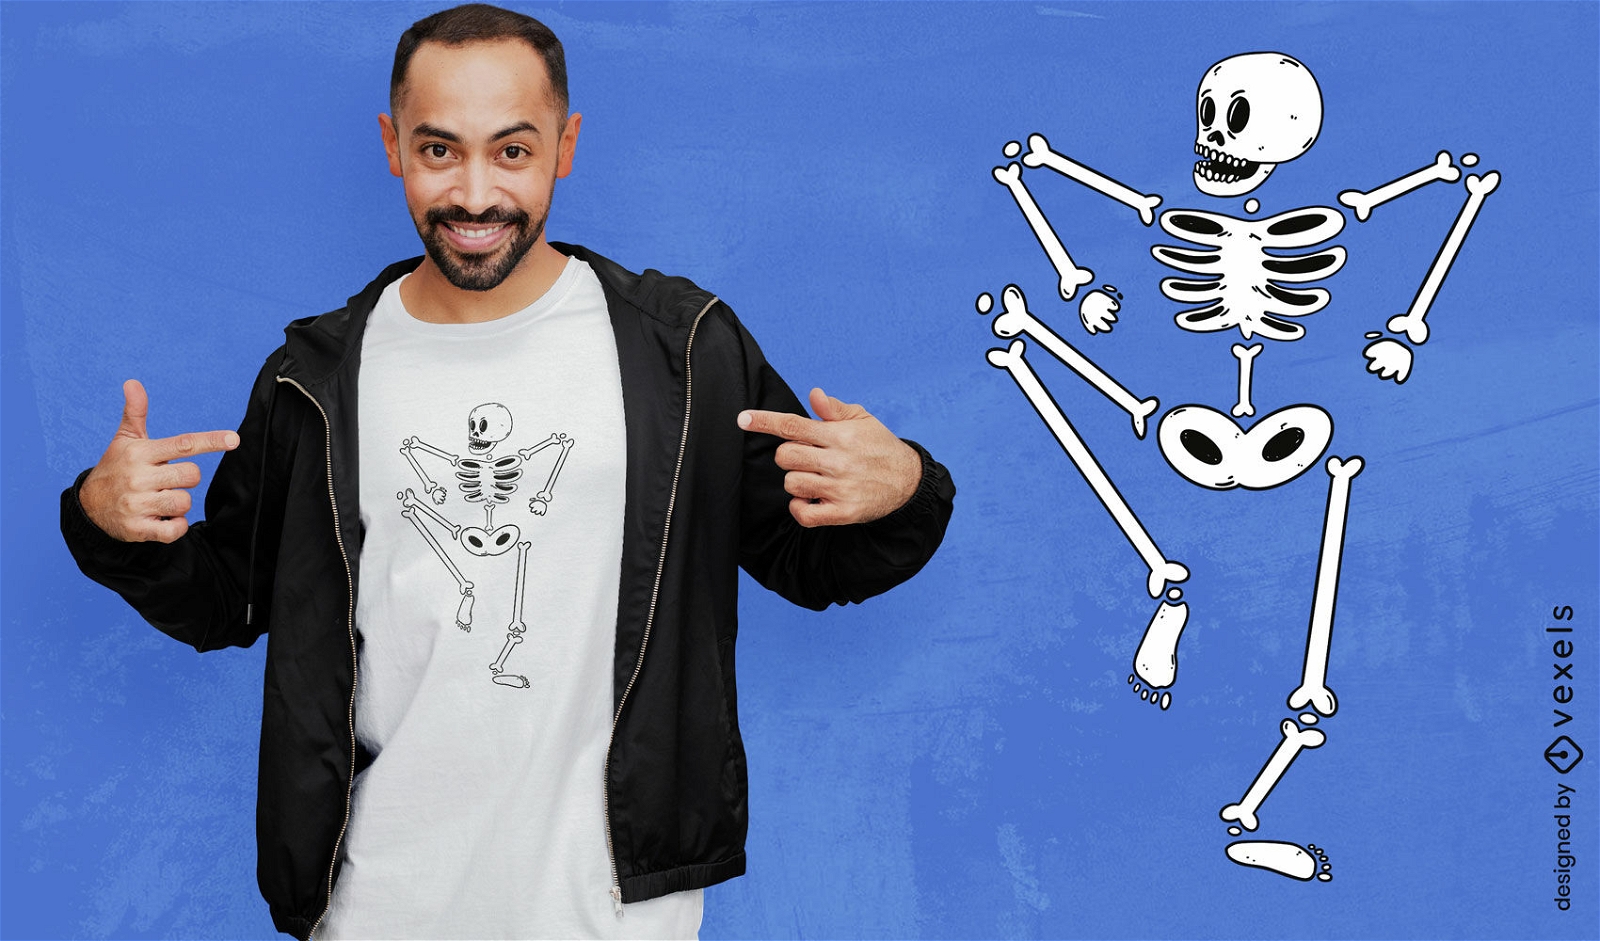 Dise?o de camiseta de esqueleto humano bailando.